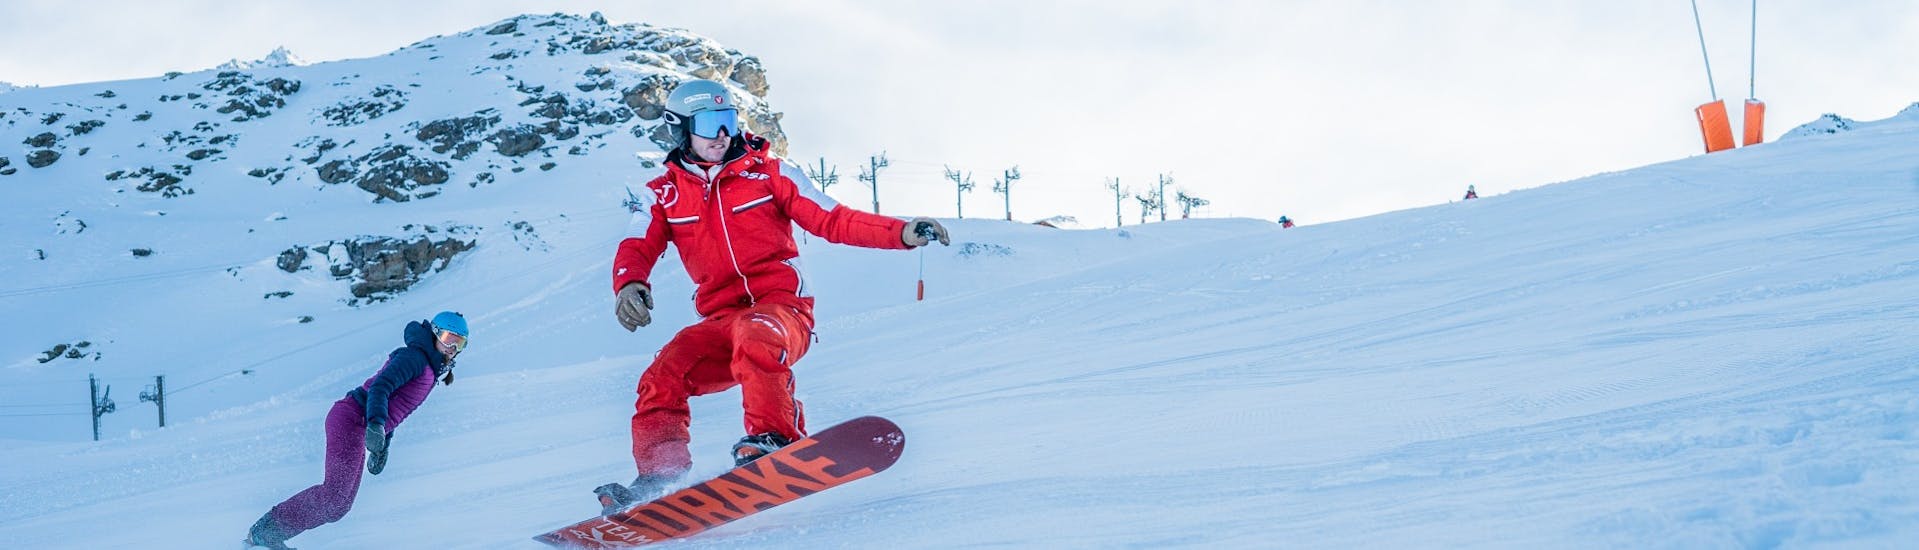 Ein Lehrer der ESF Val Thorens zeigt einige Tricks während eines privaten Snowboard-Kurses.